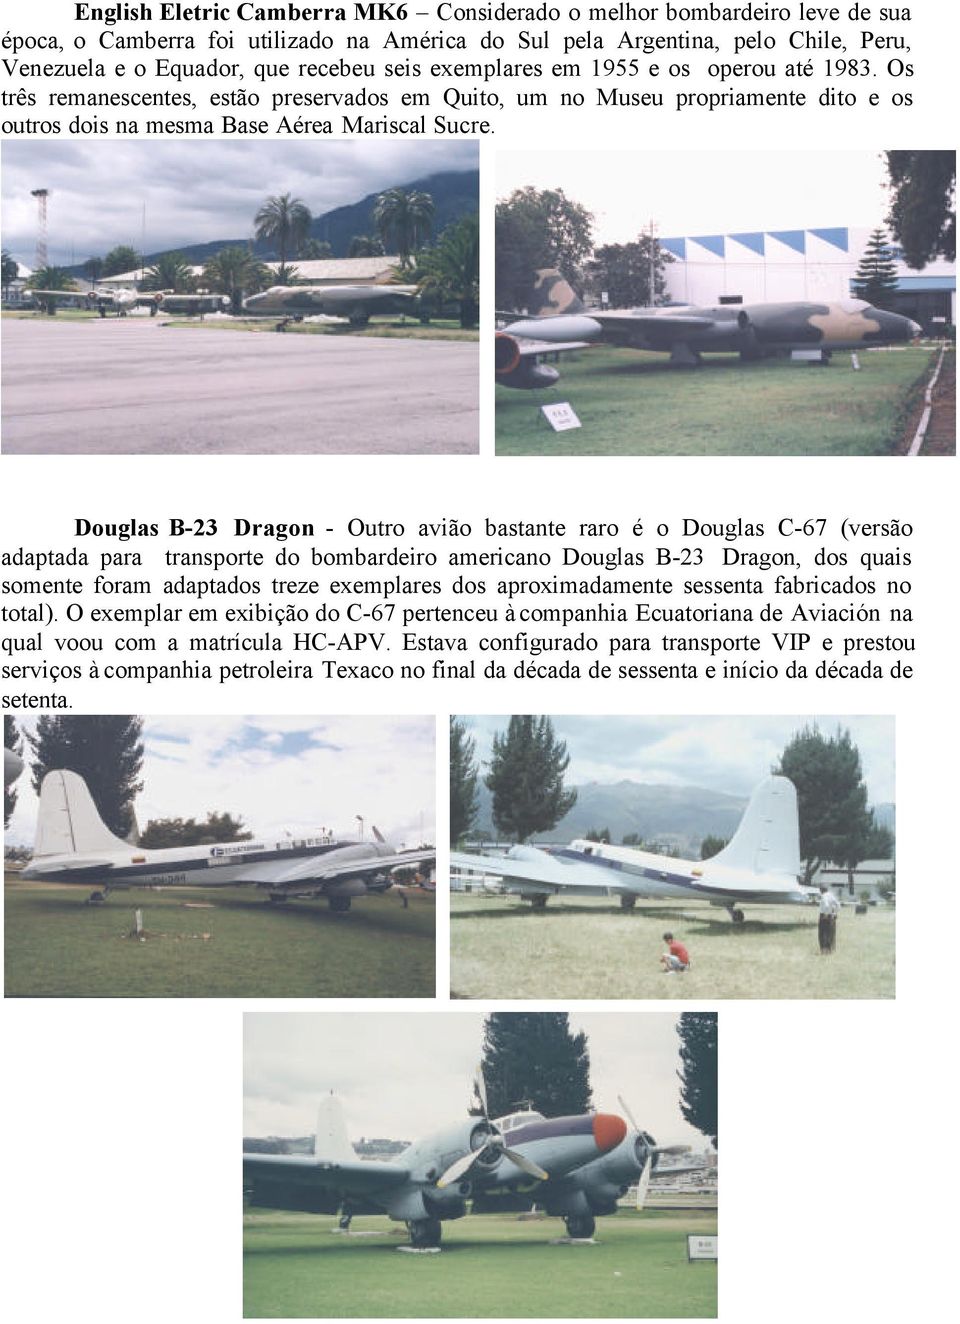 Douglas B-23 Dragon - Outro avião bastante raro é o Douglas C-67 (versão adaptada para transporte do bombardeiro americano Douglas B-23 Dragon, dos quais somente foram adaptados treze exemplares dos